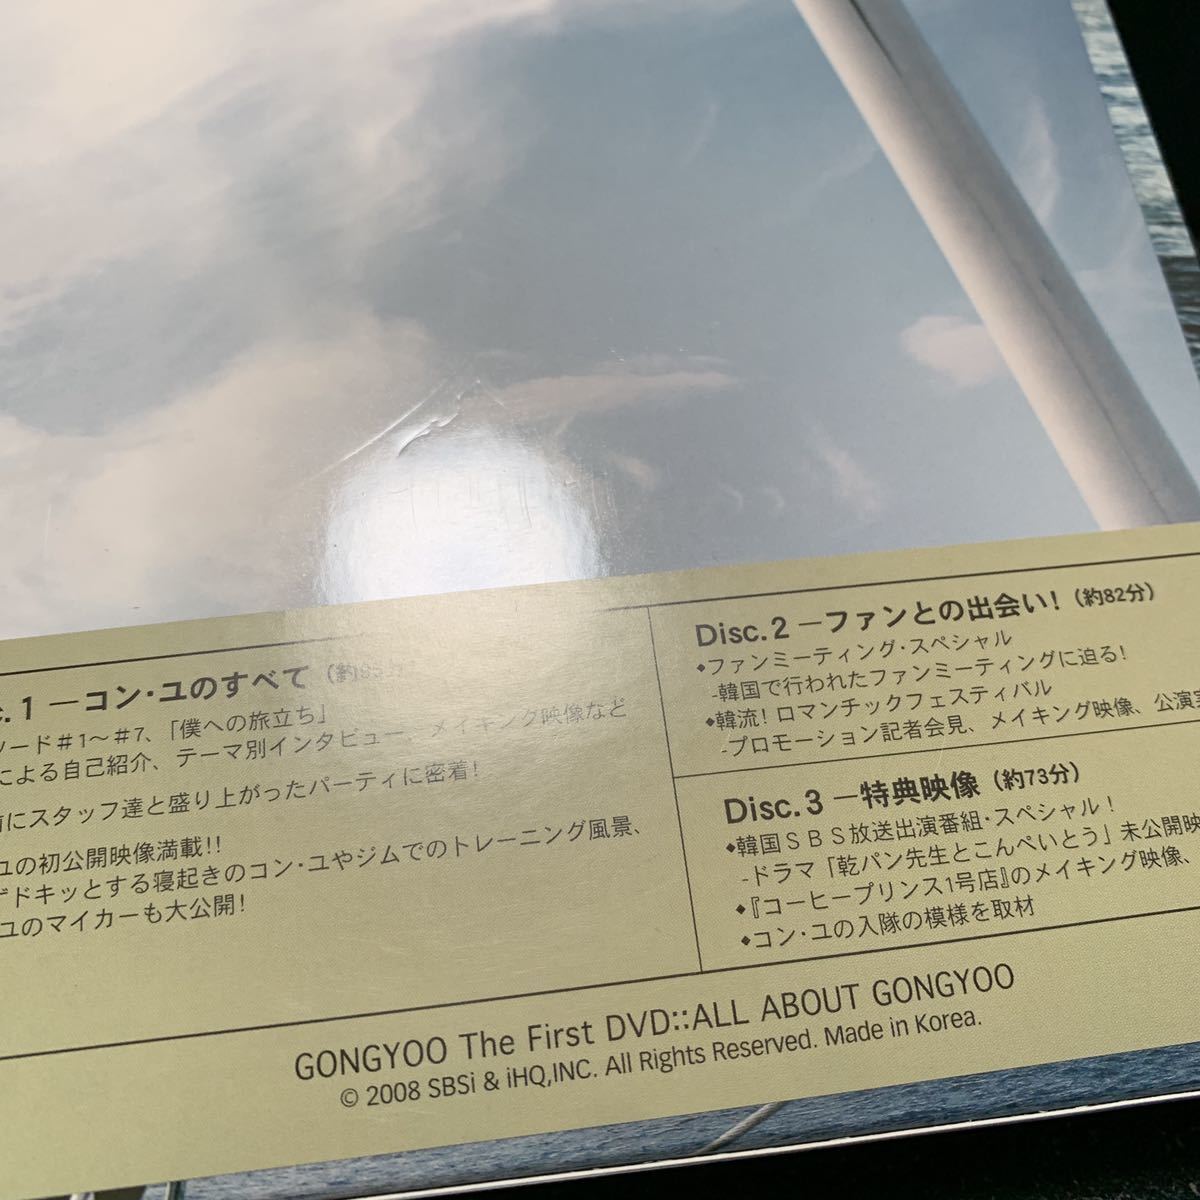 コン・ユ DVD 「ALL ABOUT GONGYOO-僕への旅立ち-」 日本で発売 www